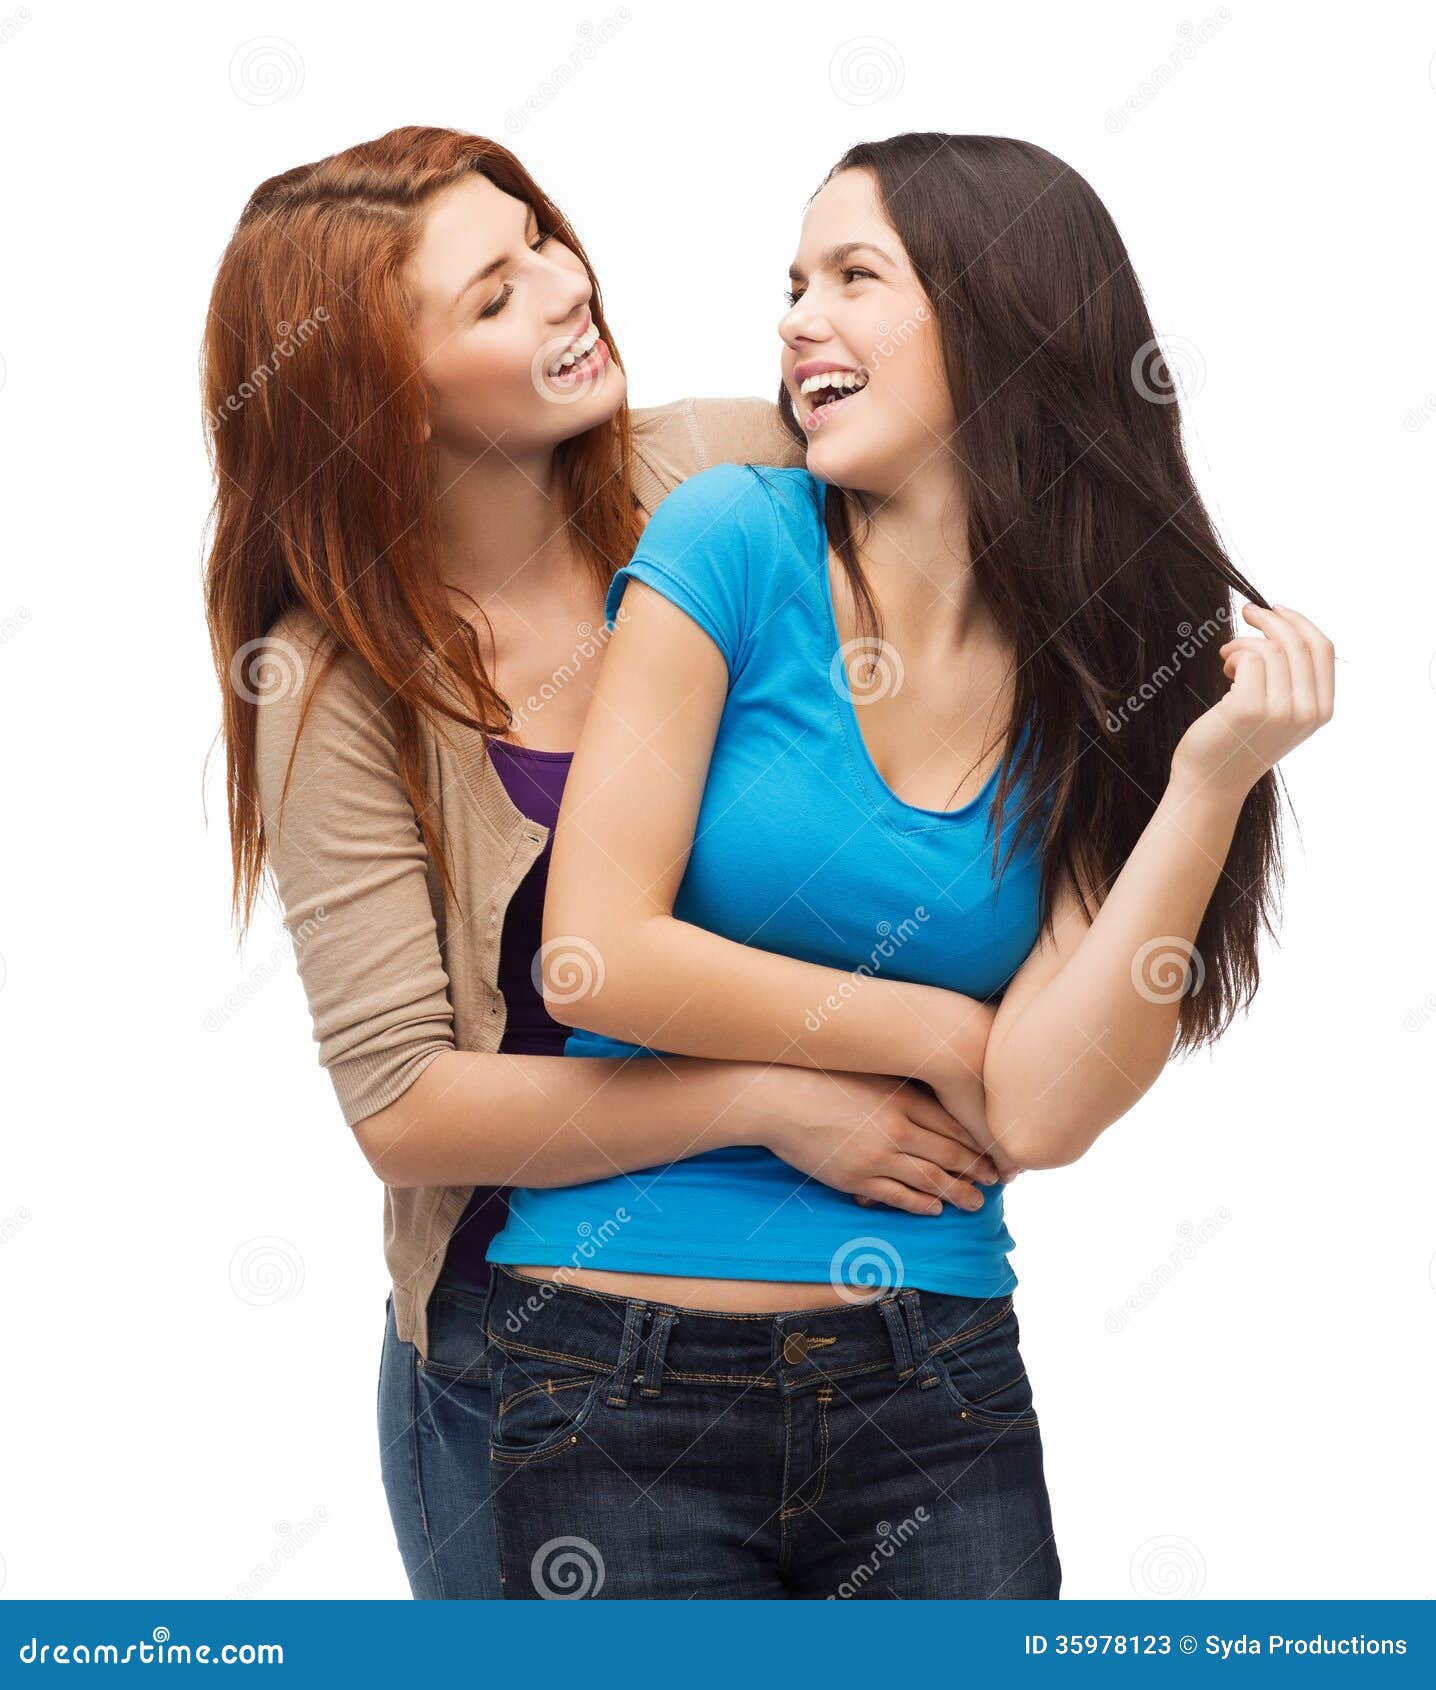 Twee Lachende Meisjes Die Elkaar Bekijken Stock Afbeelding Image Of 